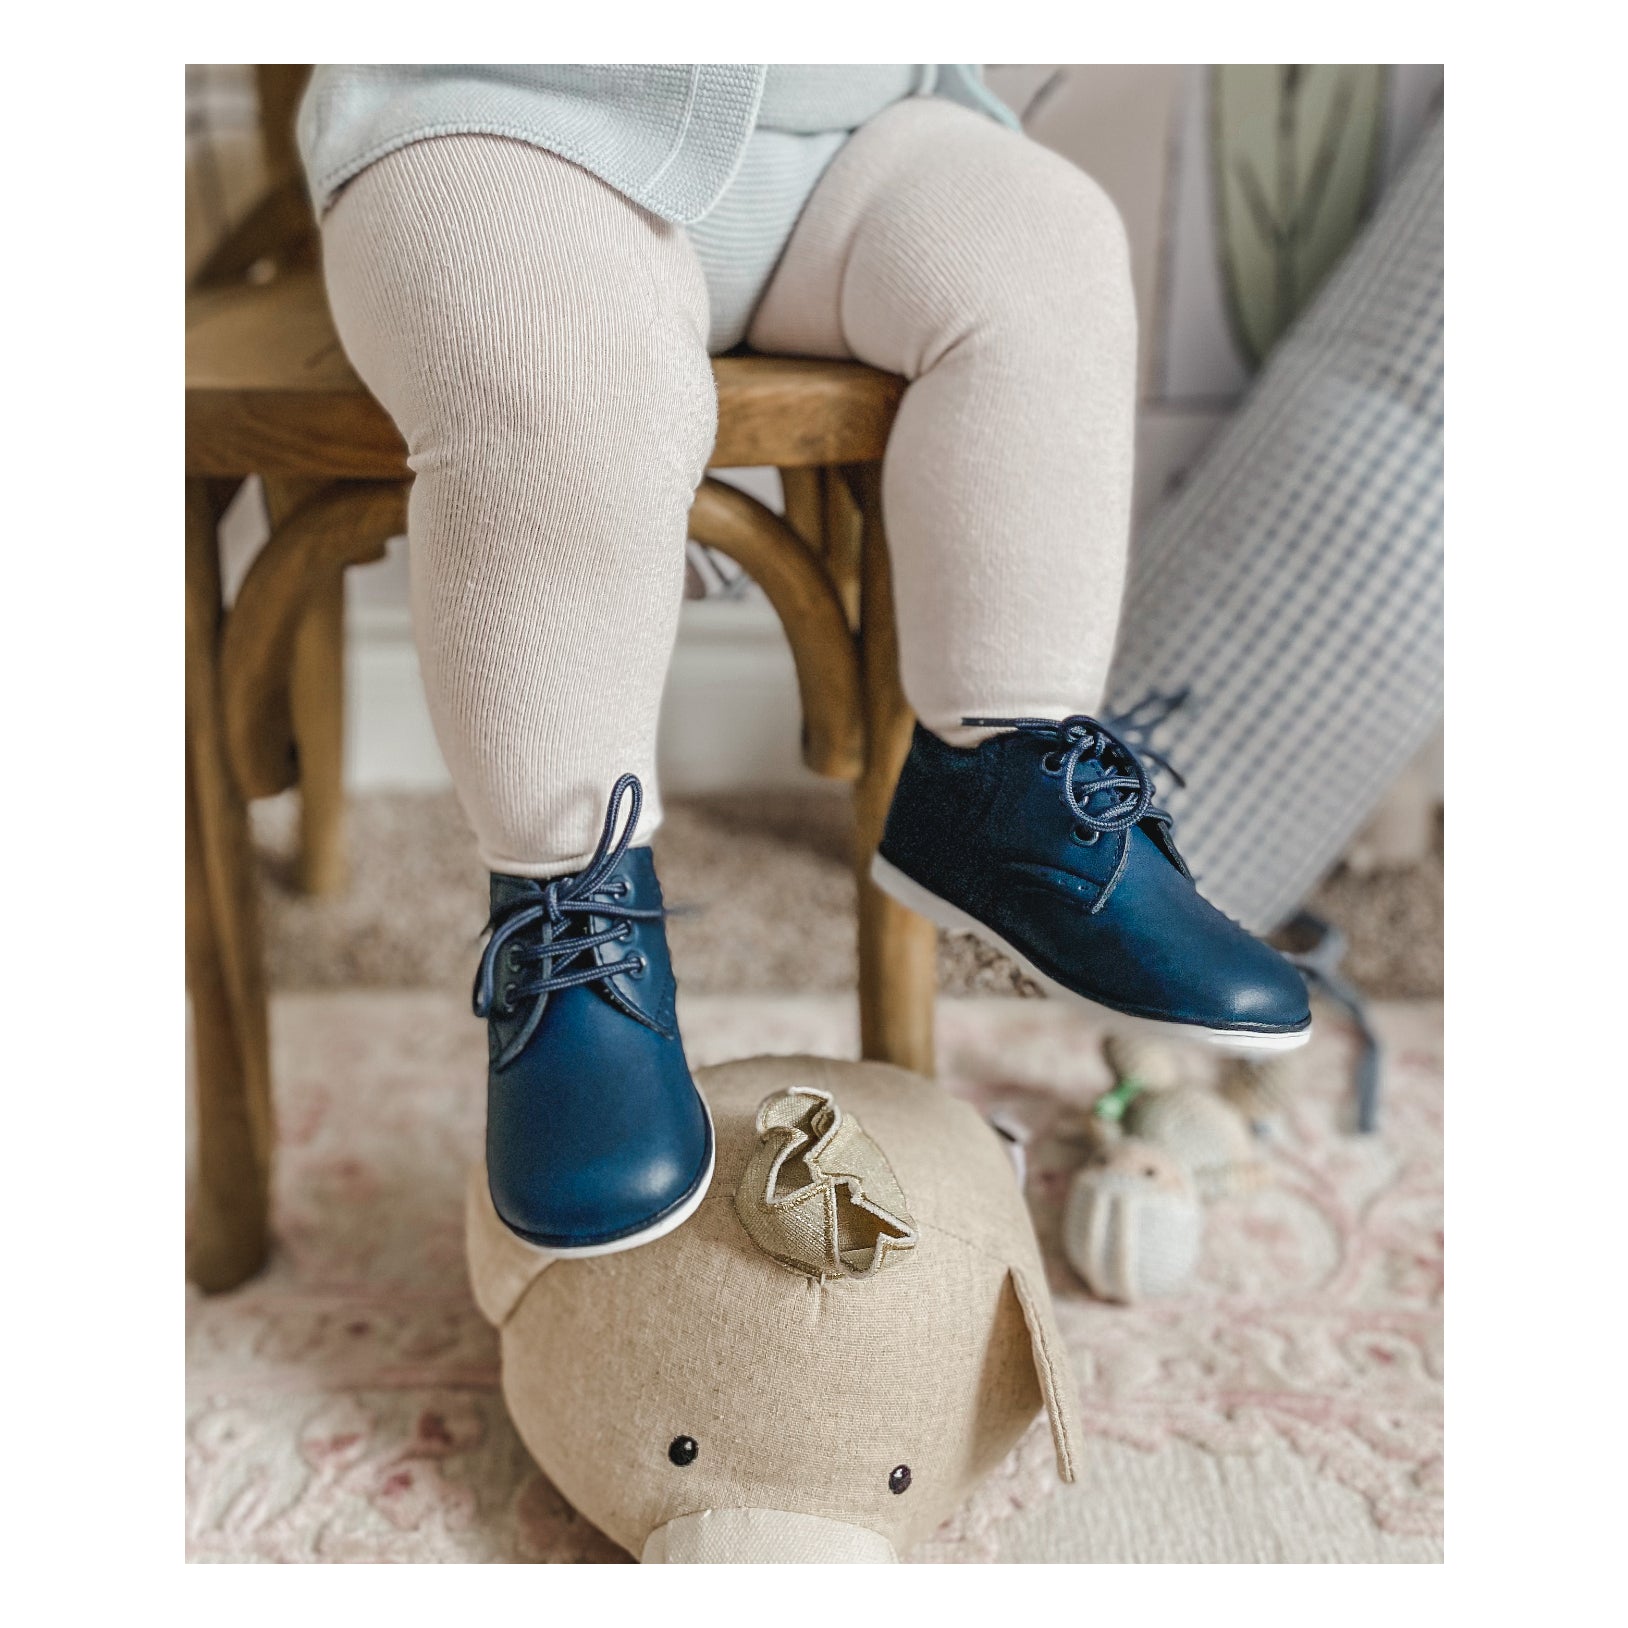 L'Amour Shoes Boy's James Pre-Walker Derby Shoes, Baby